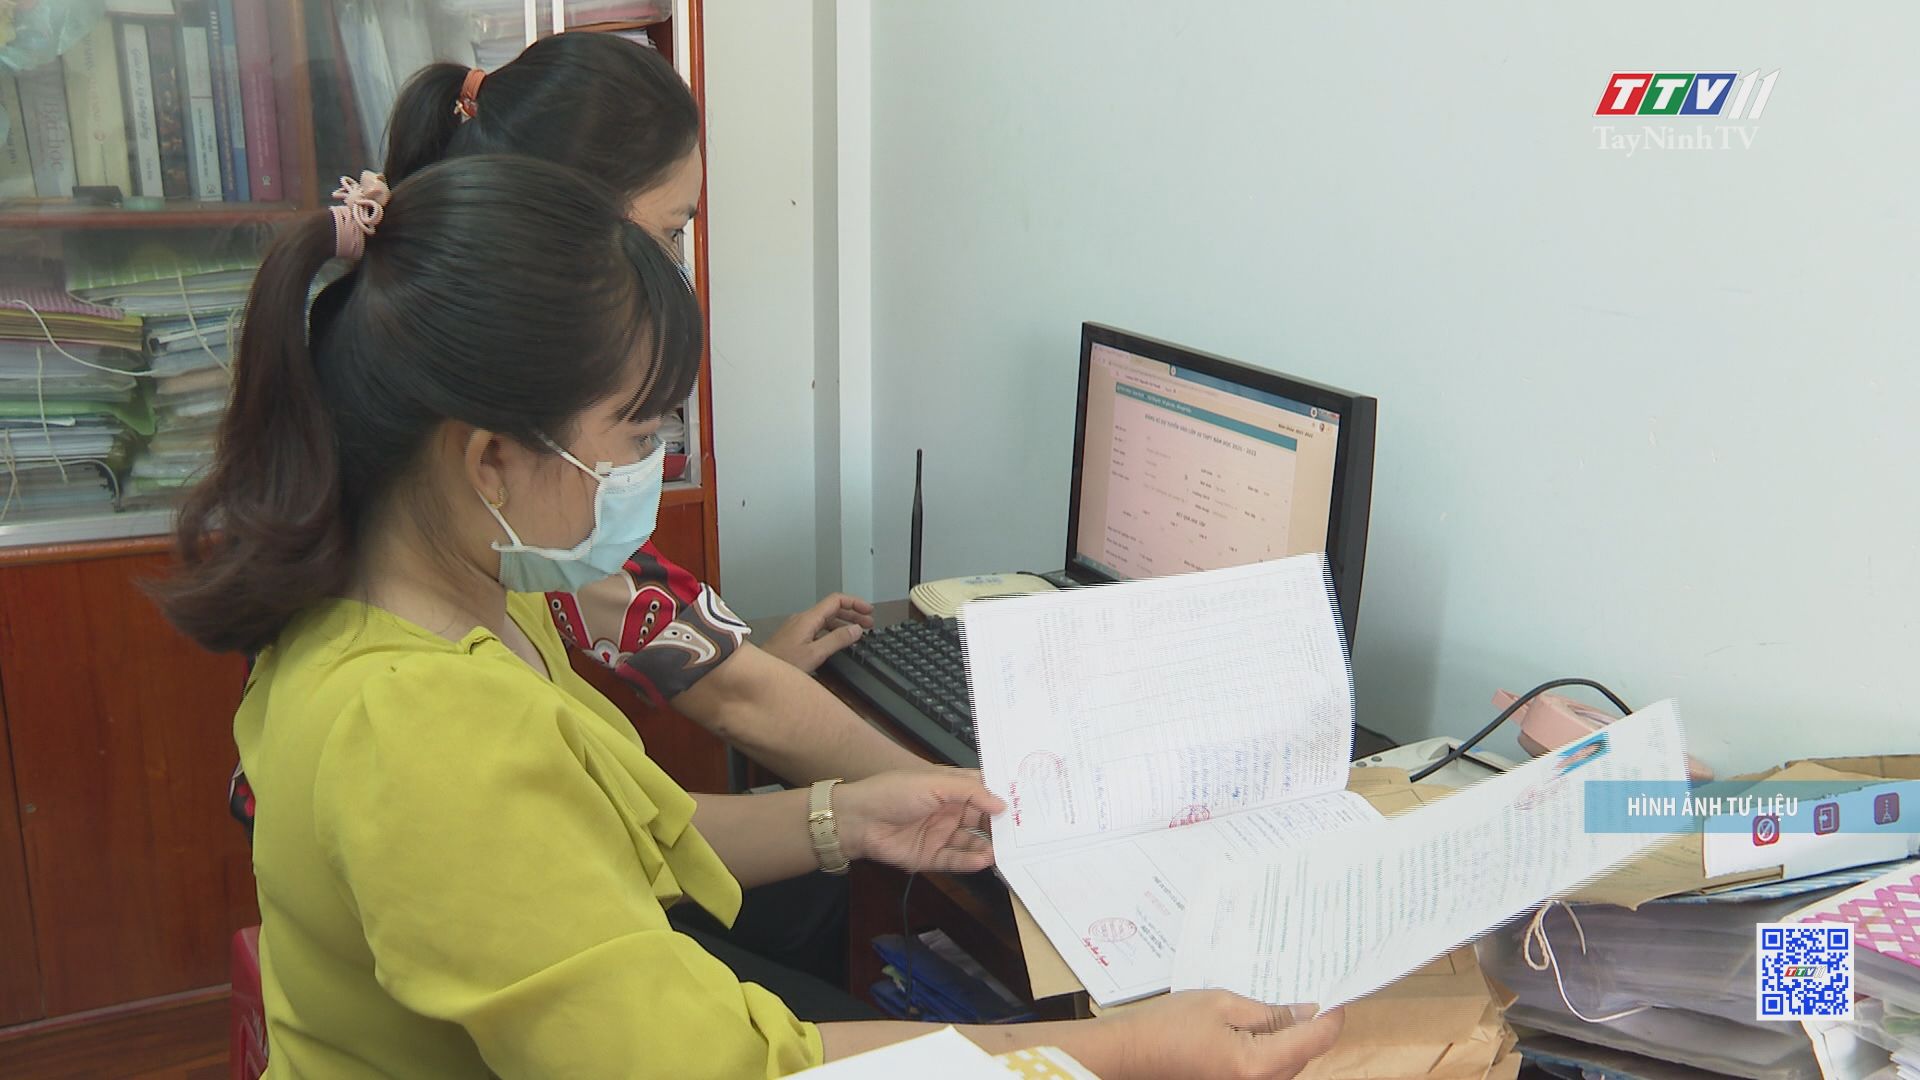 Tây Ninh tích cực chuẩn bị cơ sở vật chất cho tuyển sinh lớp 10 | GIÁO DỤC & ĐÀO TẠO | TayNinhTV